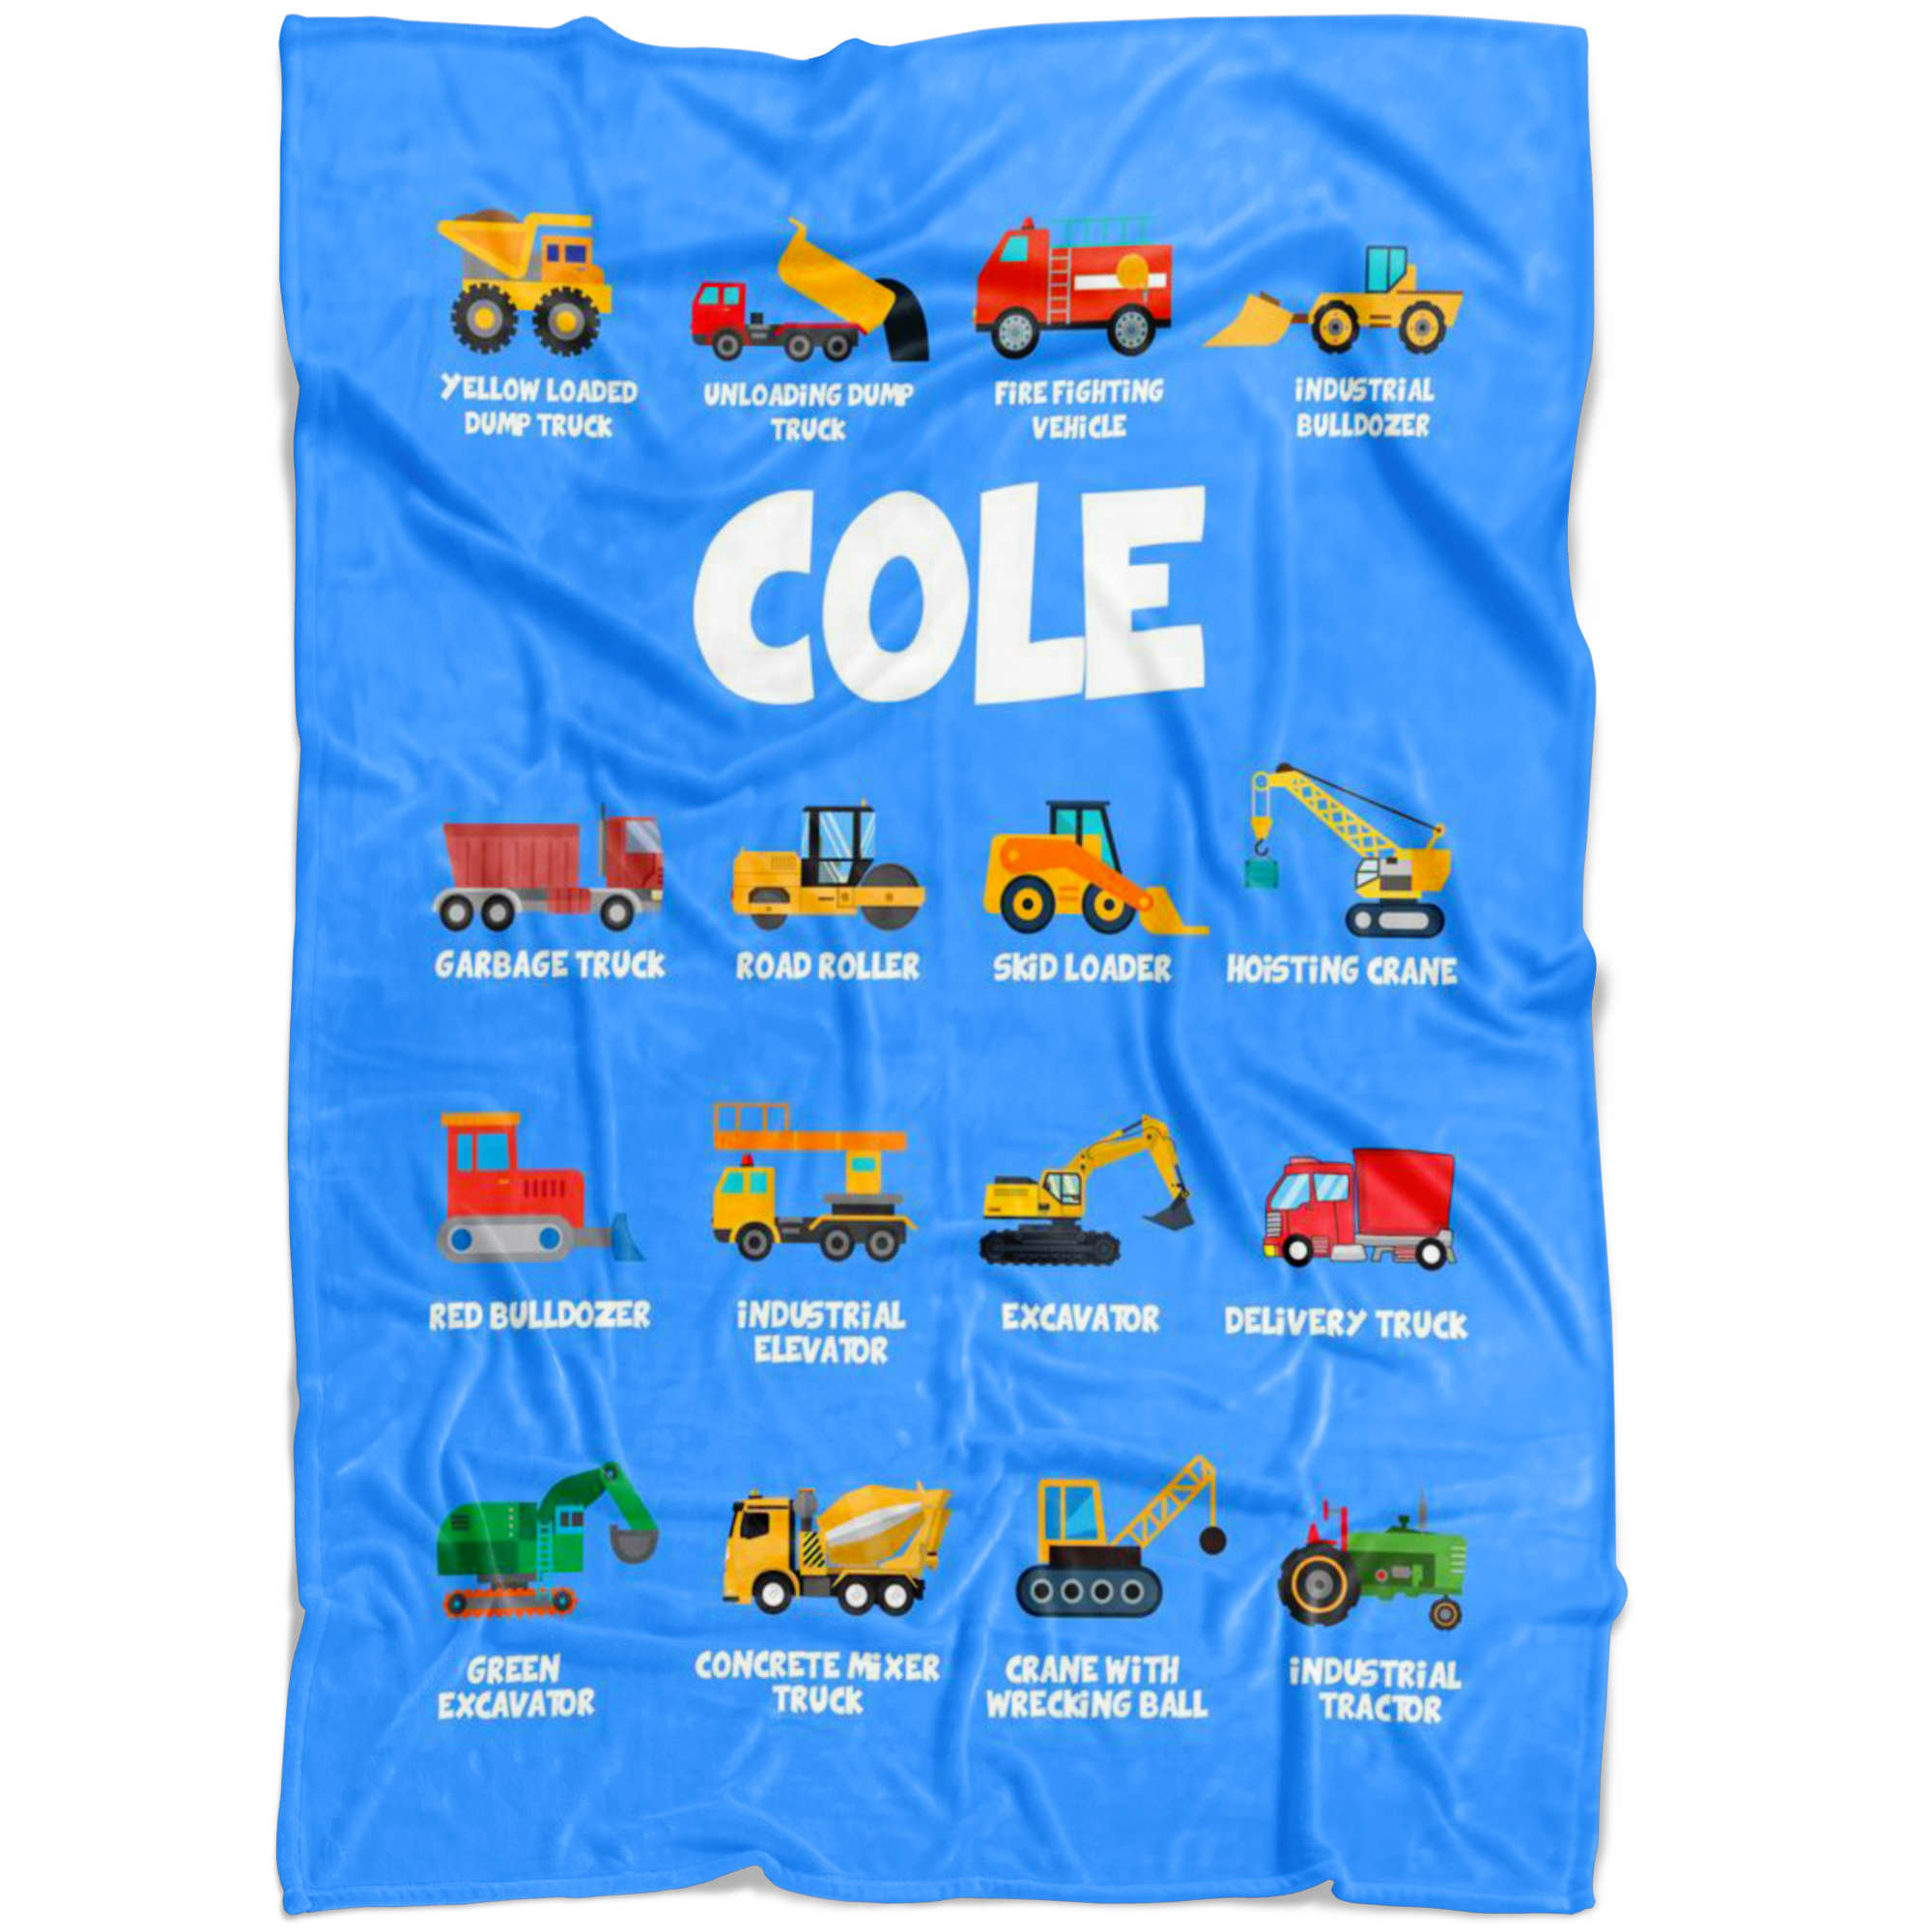 Cole Construction Blanket Blue